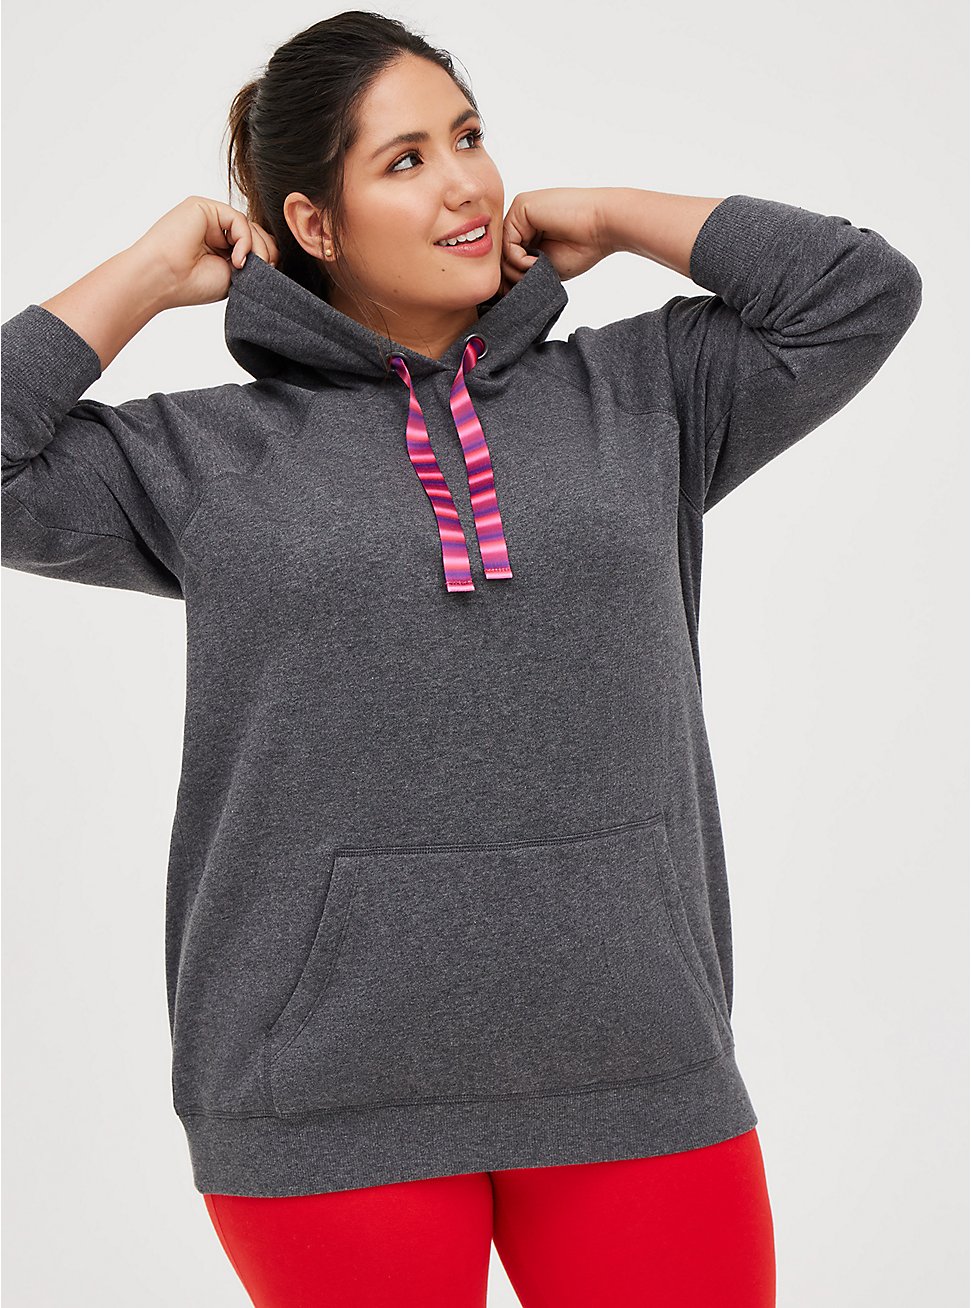 Plus Size Tunic Sweatshirt - Cozy Fleece Charcoal, CHARCOAL  GREY, hi-res